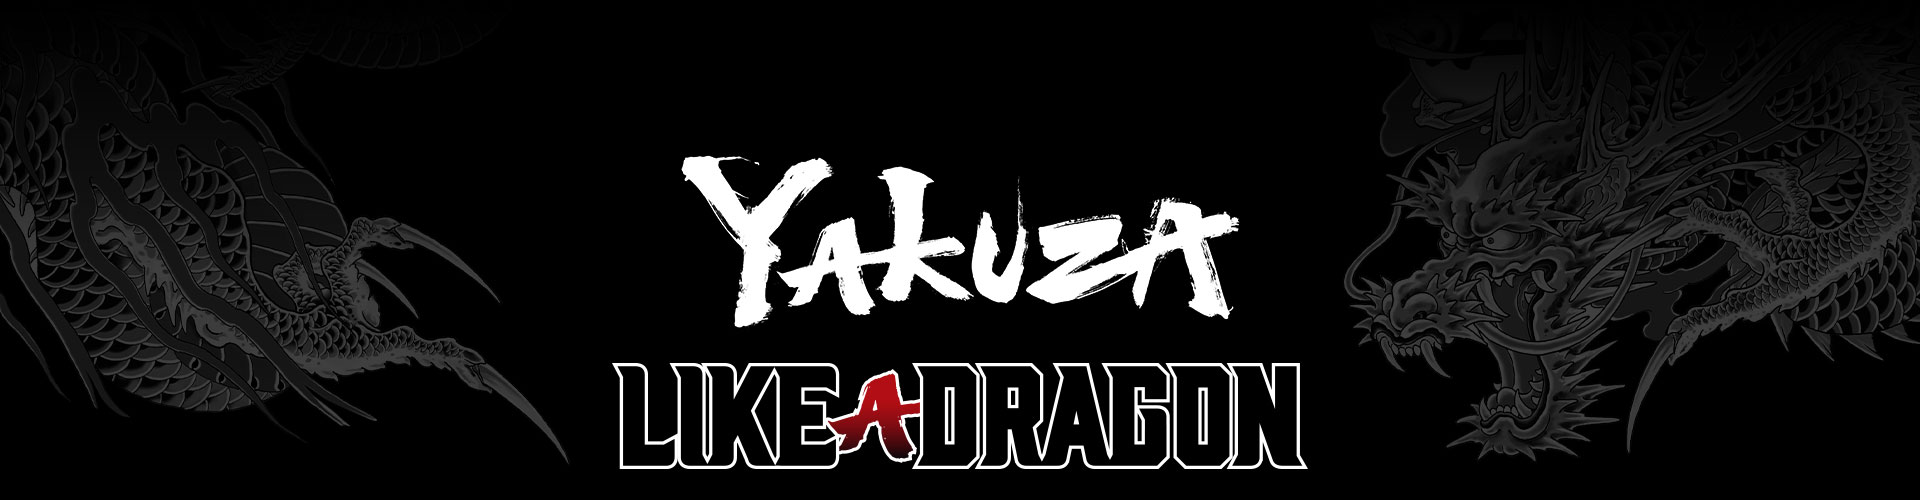 Yakuza Like a Dragon-franchiselogo med stilisert grå dragon-tatoveringsbakgrunn.